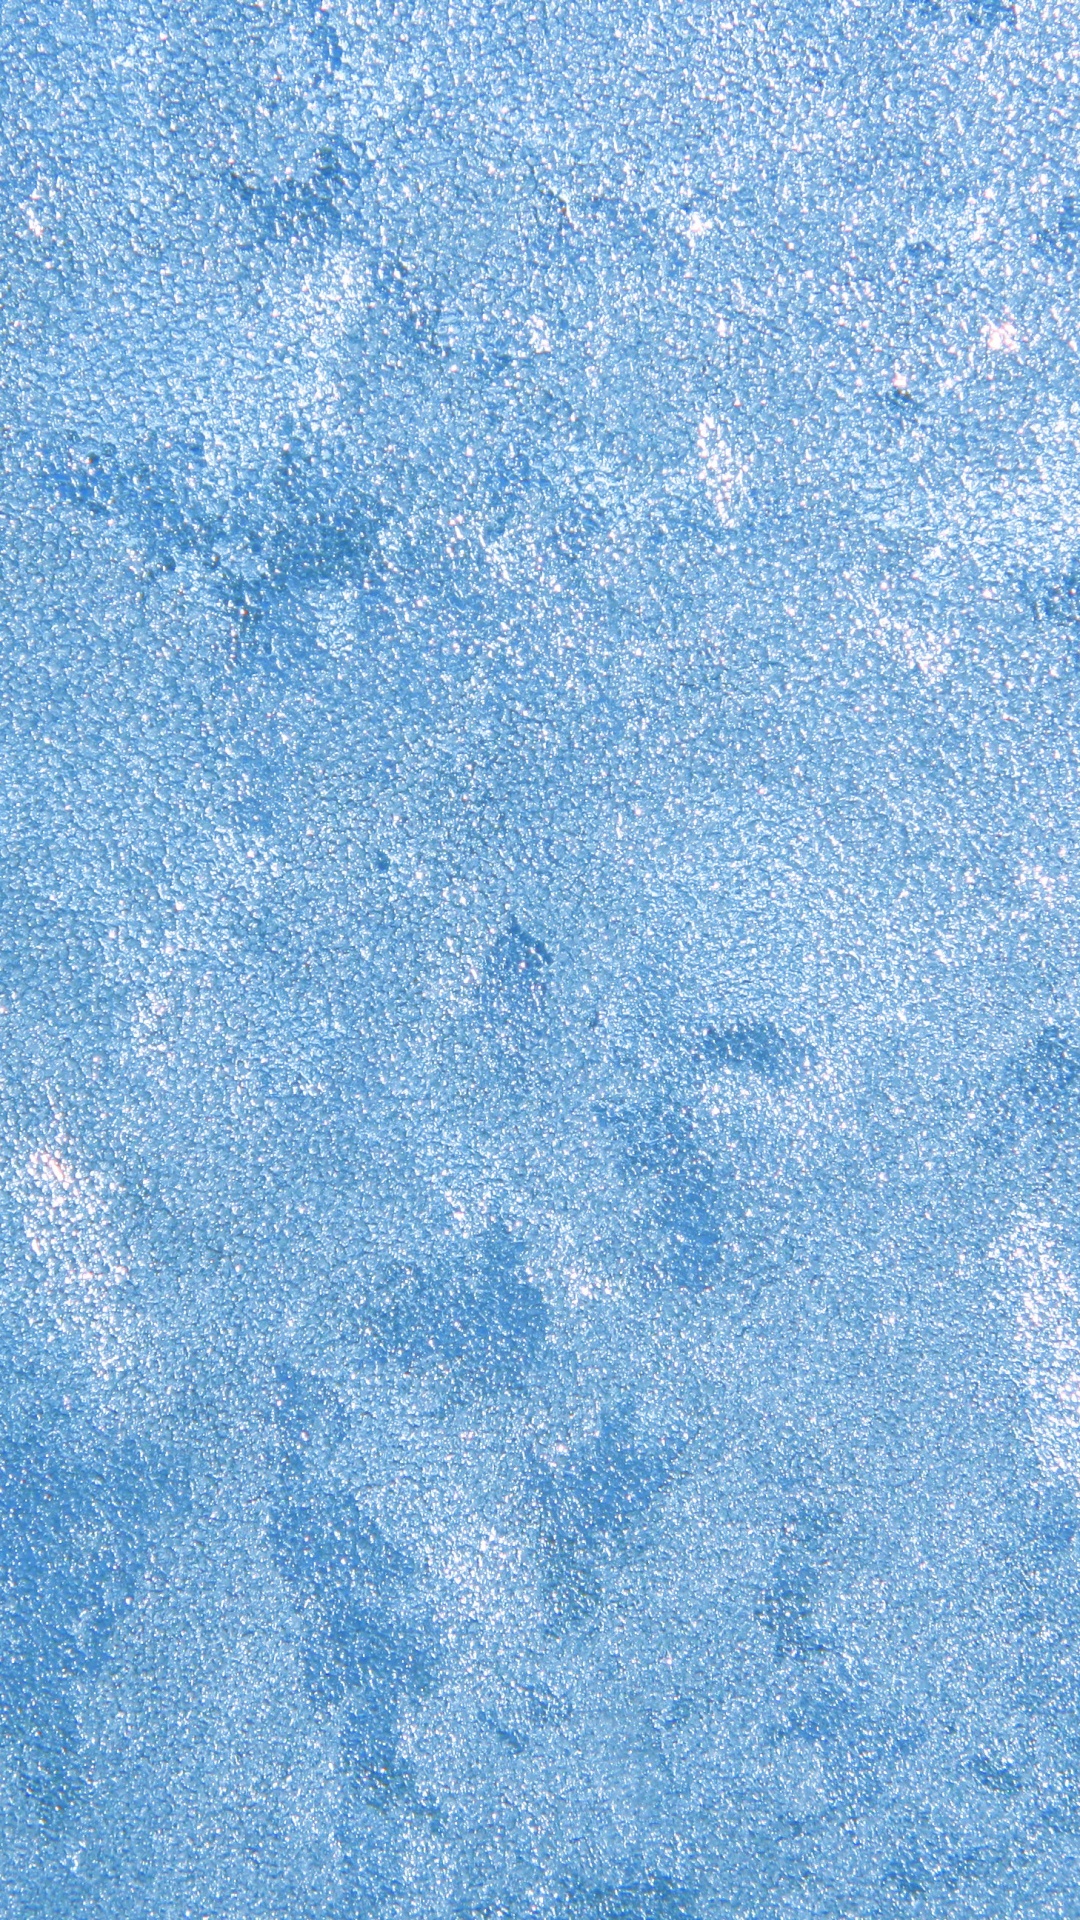 Blaue Und Weiße Abstrakte Malerei. Wallpaper in 1080x1920 Resolution